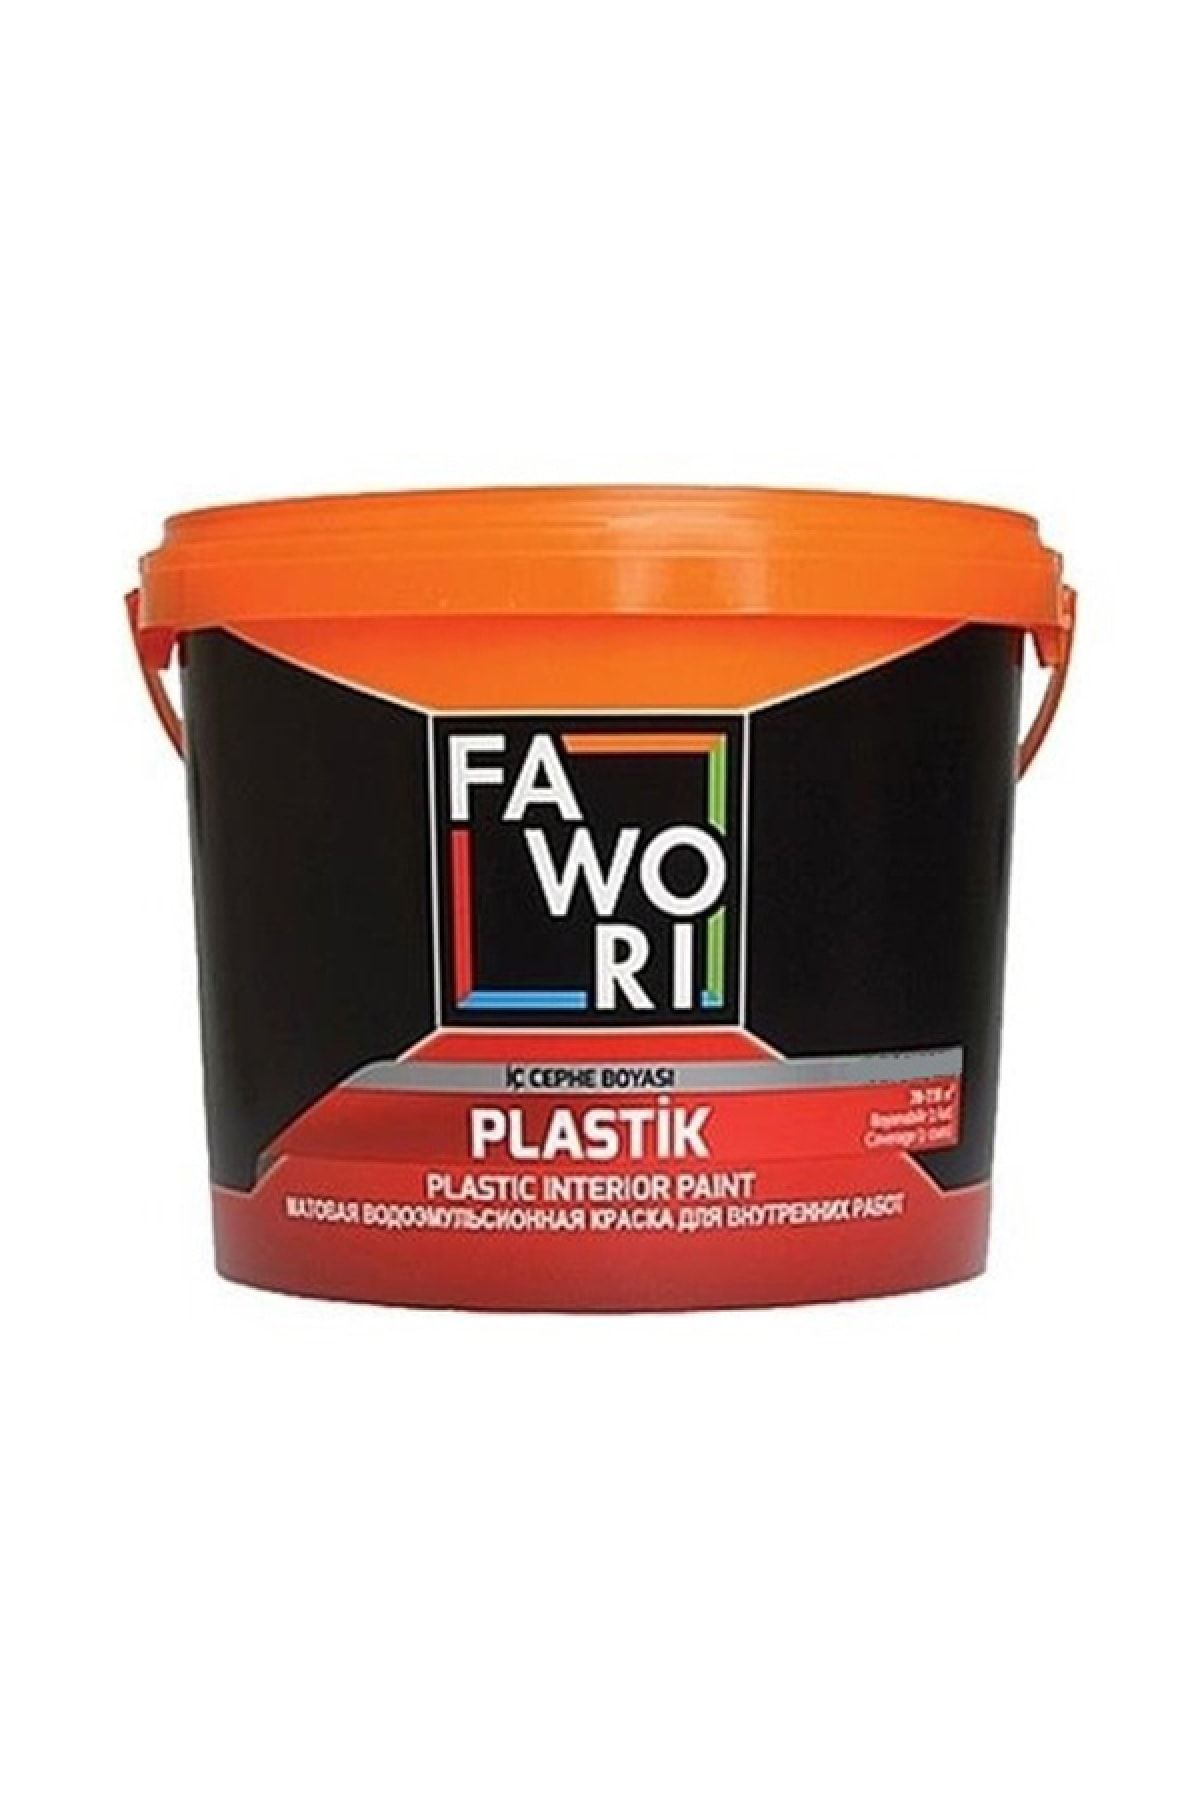 Fawori Plastik Iç Cephe Duvar Boyası 3.5 Kg Renk:mantar